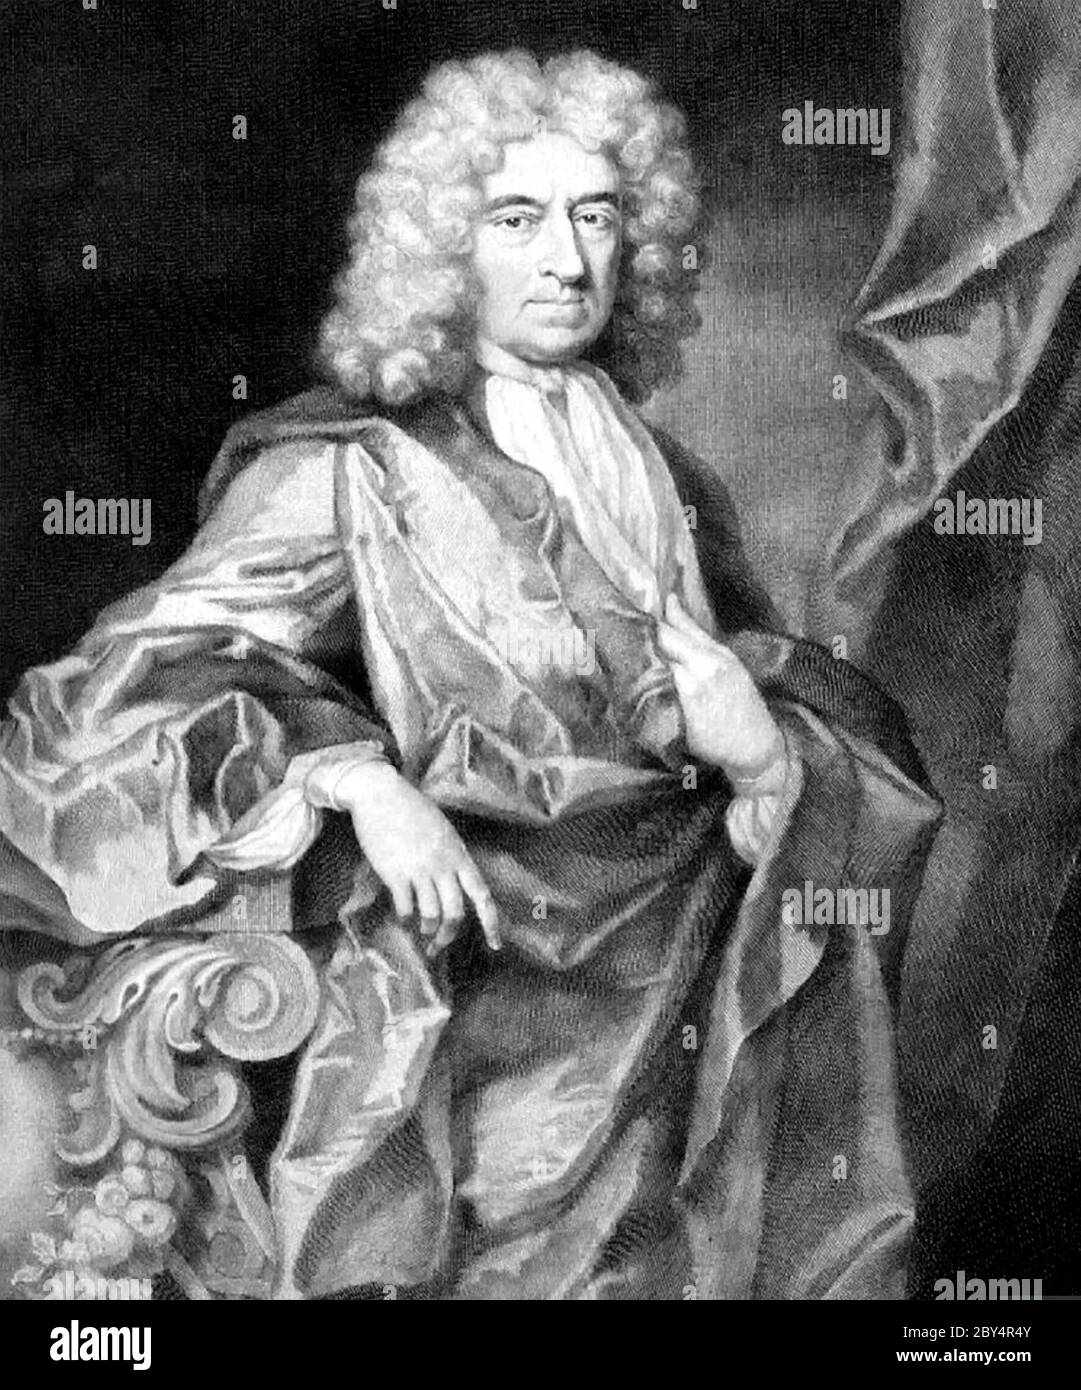 EDWARD COLSTON (1636-1721) englischer Kaufmann und Abgeordneter, der am Sklavenhandel beteiligt ist. Stockfoto